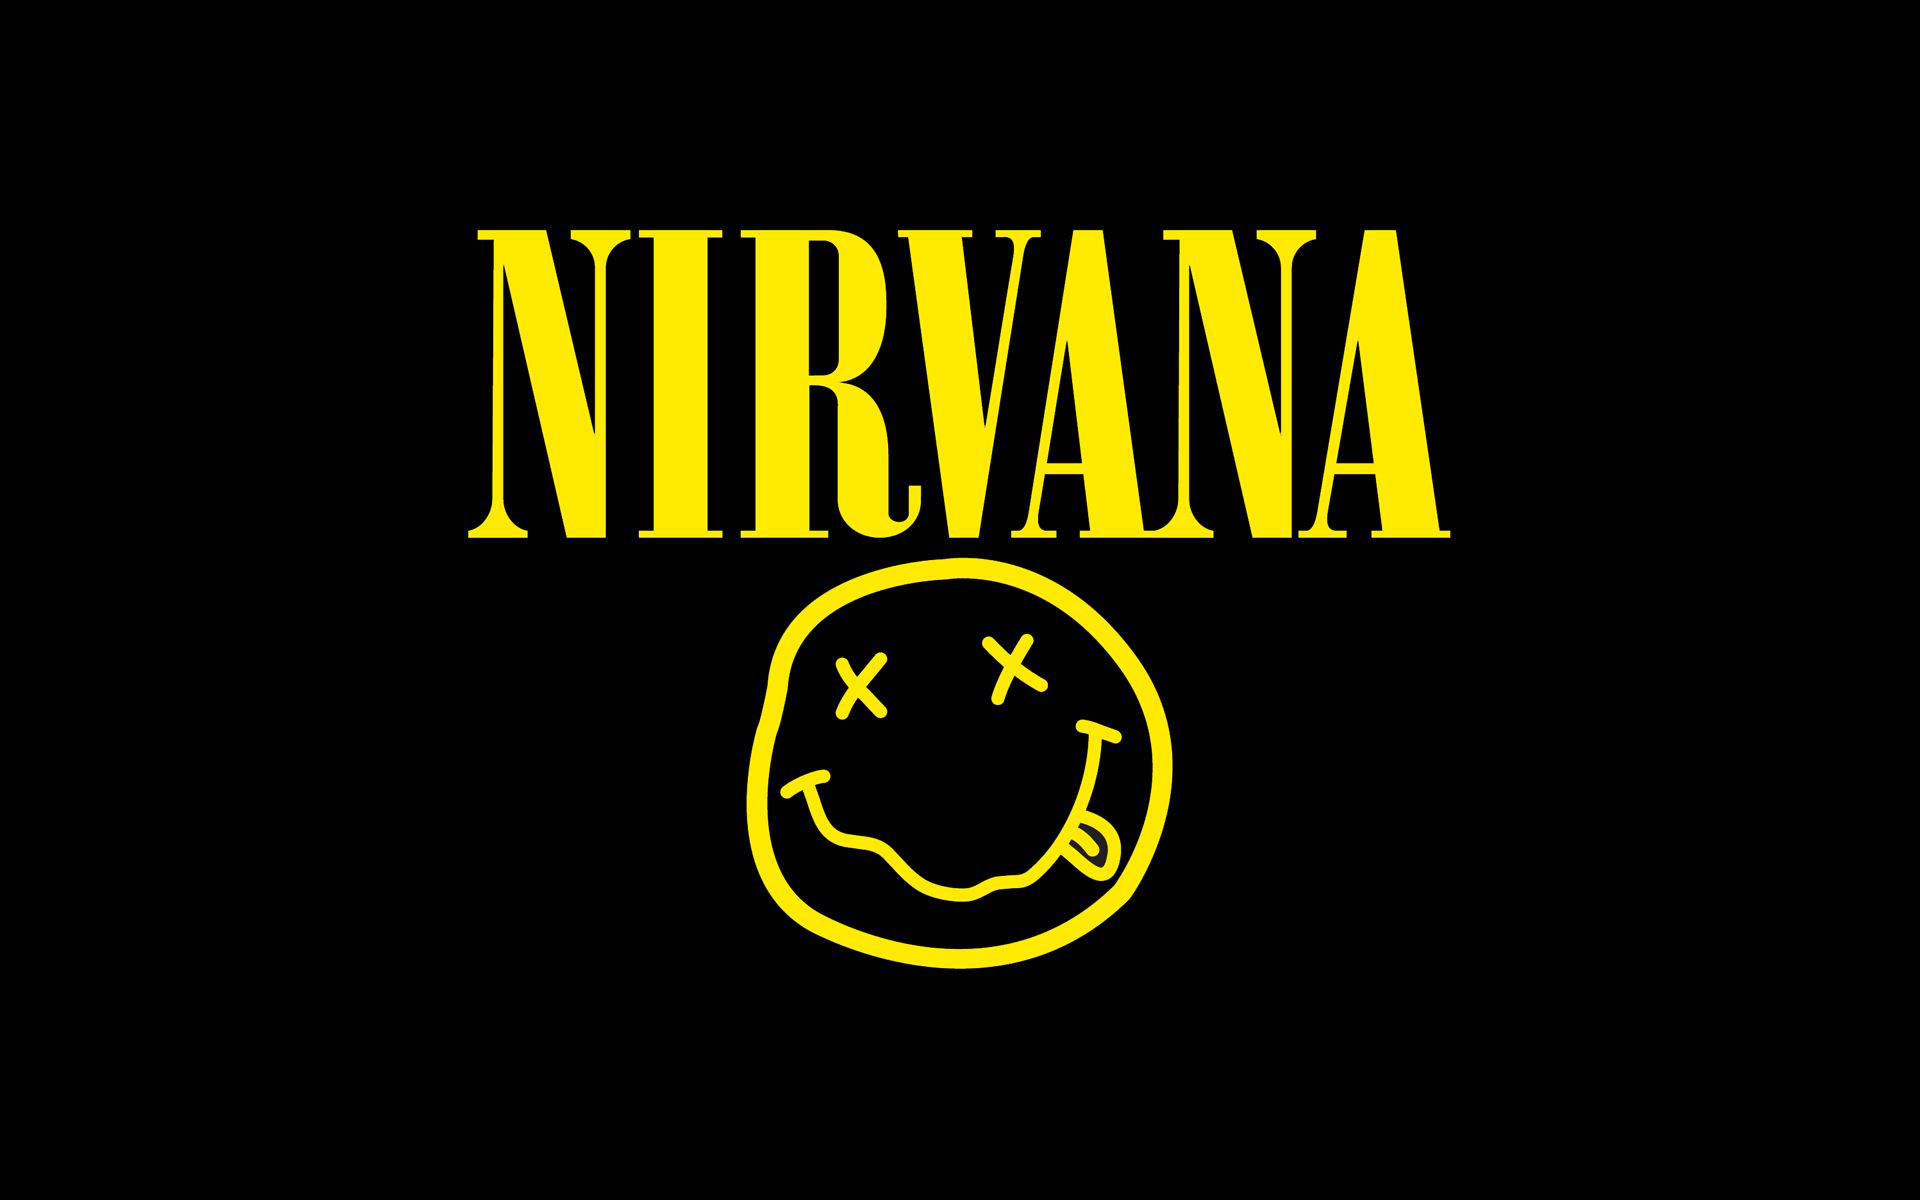 Bandlogotypenför Nirvana I 4k-upplösning. Wallpaper